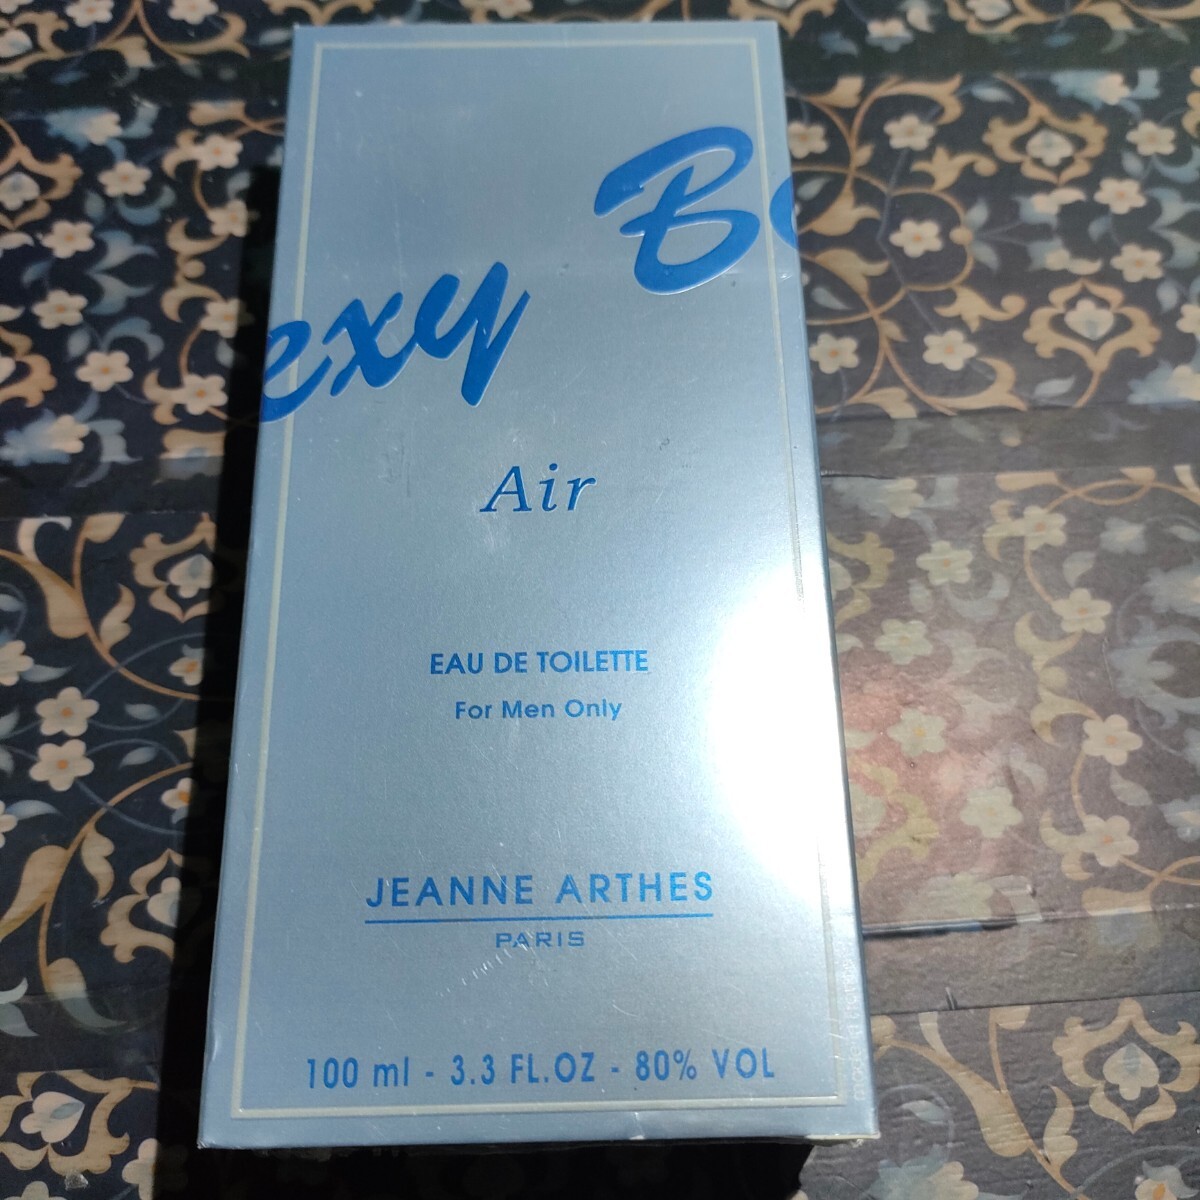  новый товар нераспечатанный Jeanne Arthes sek C-boy AIR / THE FEEL The *fi-ruo-doto трещина 100ml 2 шт. комплект духи быстрое решение включая доставку 